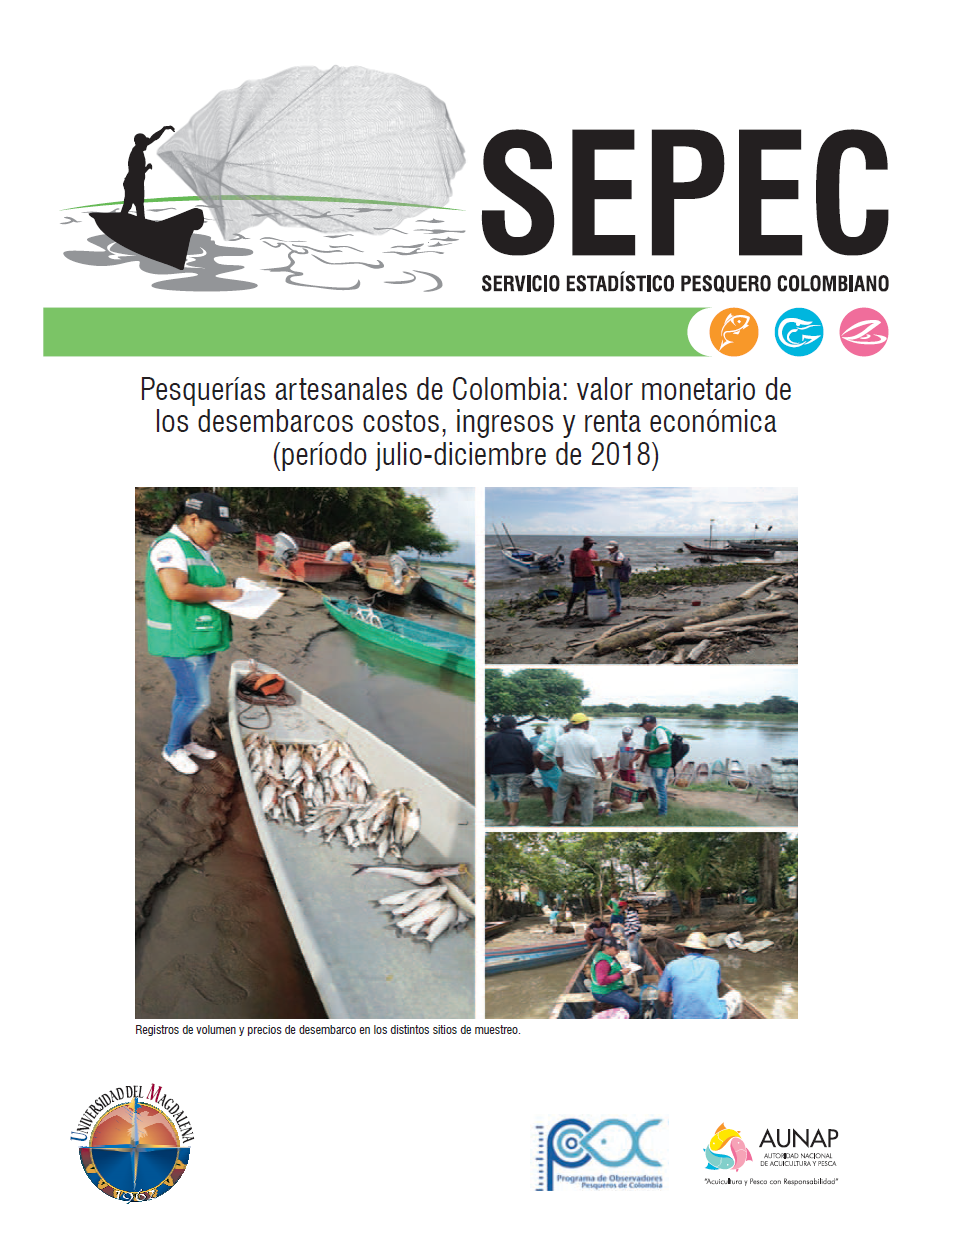 Pesquerías artesanales de Colombia: valor monetario de los desembarcos costos, ingresos y renta económica (período julio-diciembre de 2018)